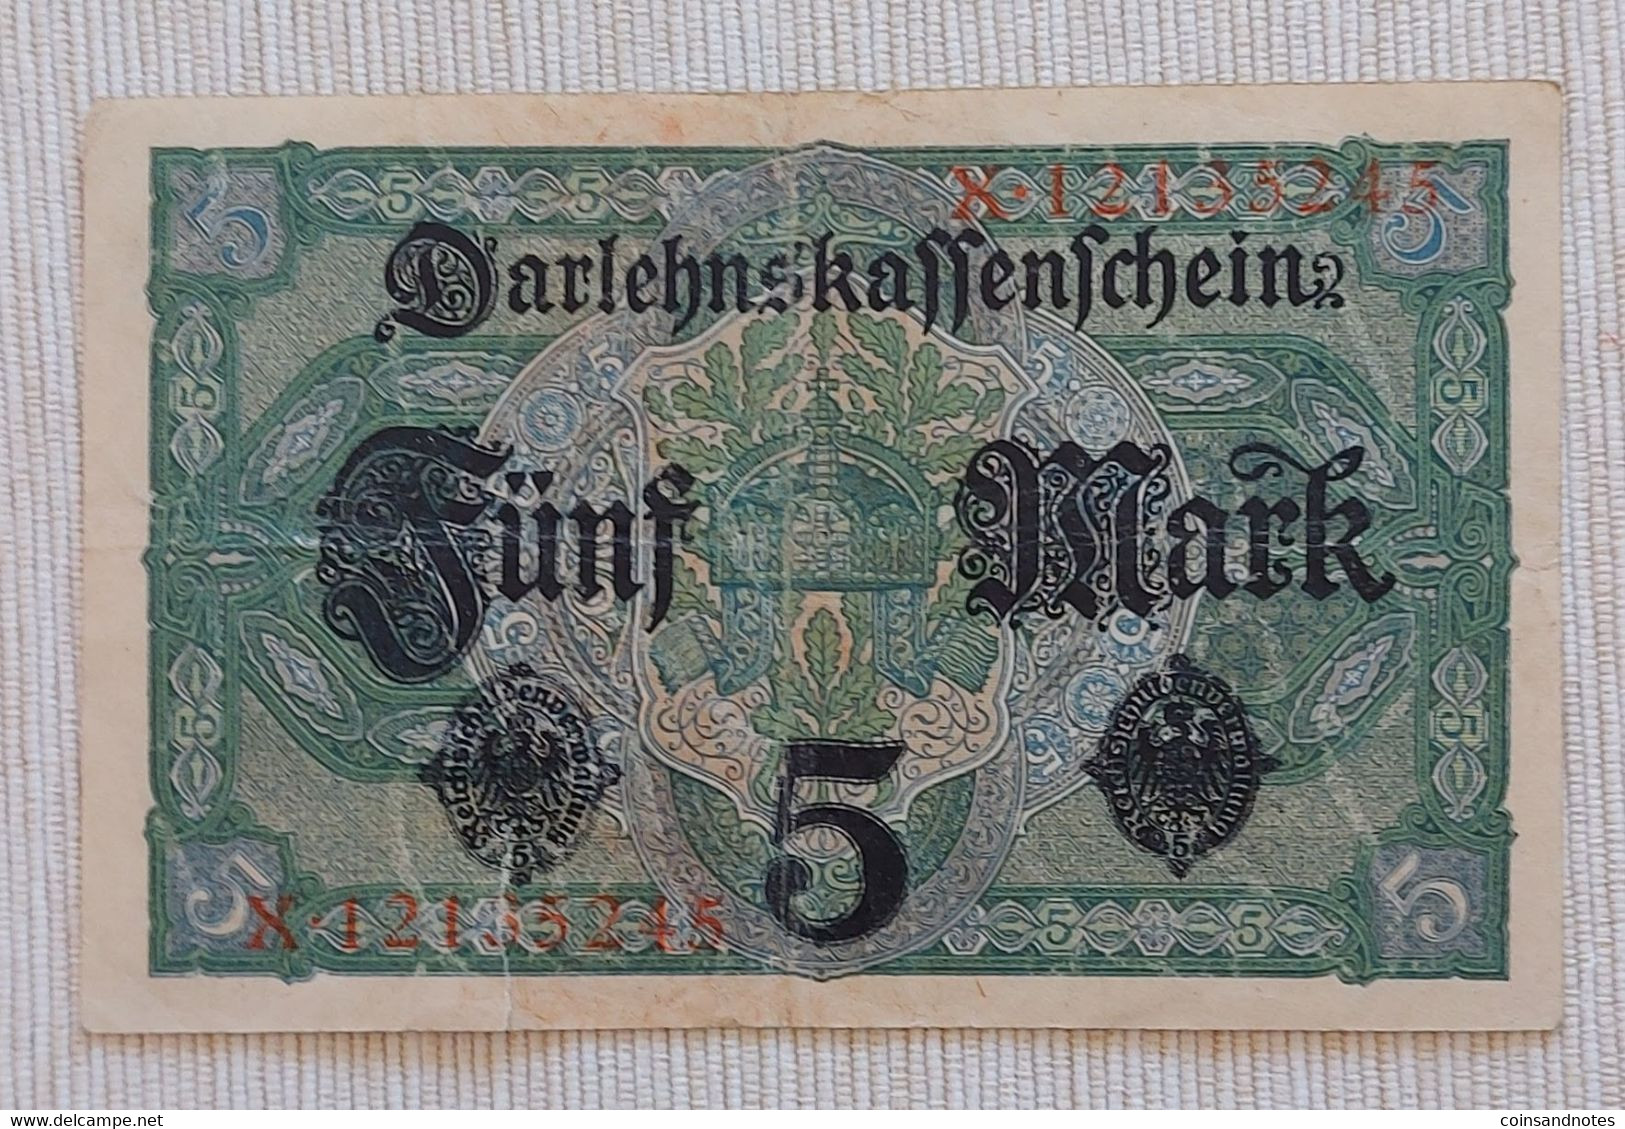 Germany 1917 - 5 Mark - Darlehnskassenschein - No X.12135245 - P# 56b - Near UNC - 5 Mark